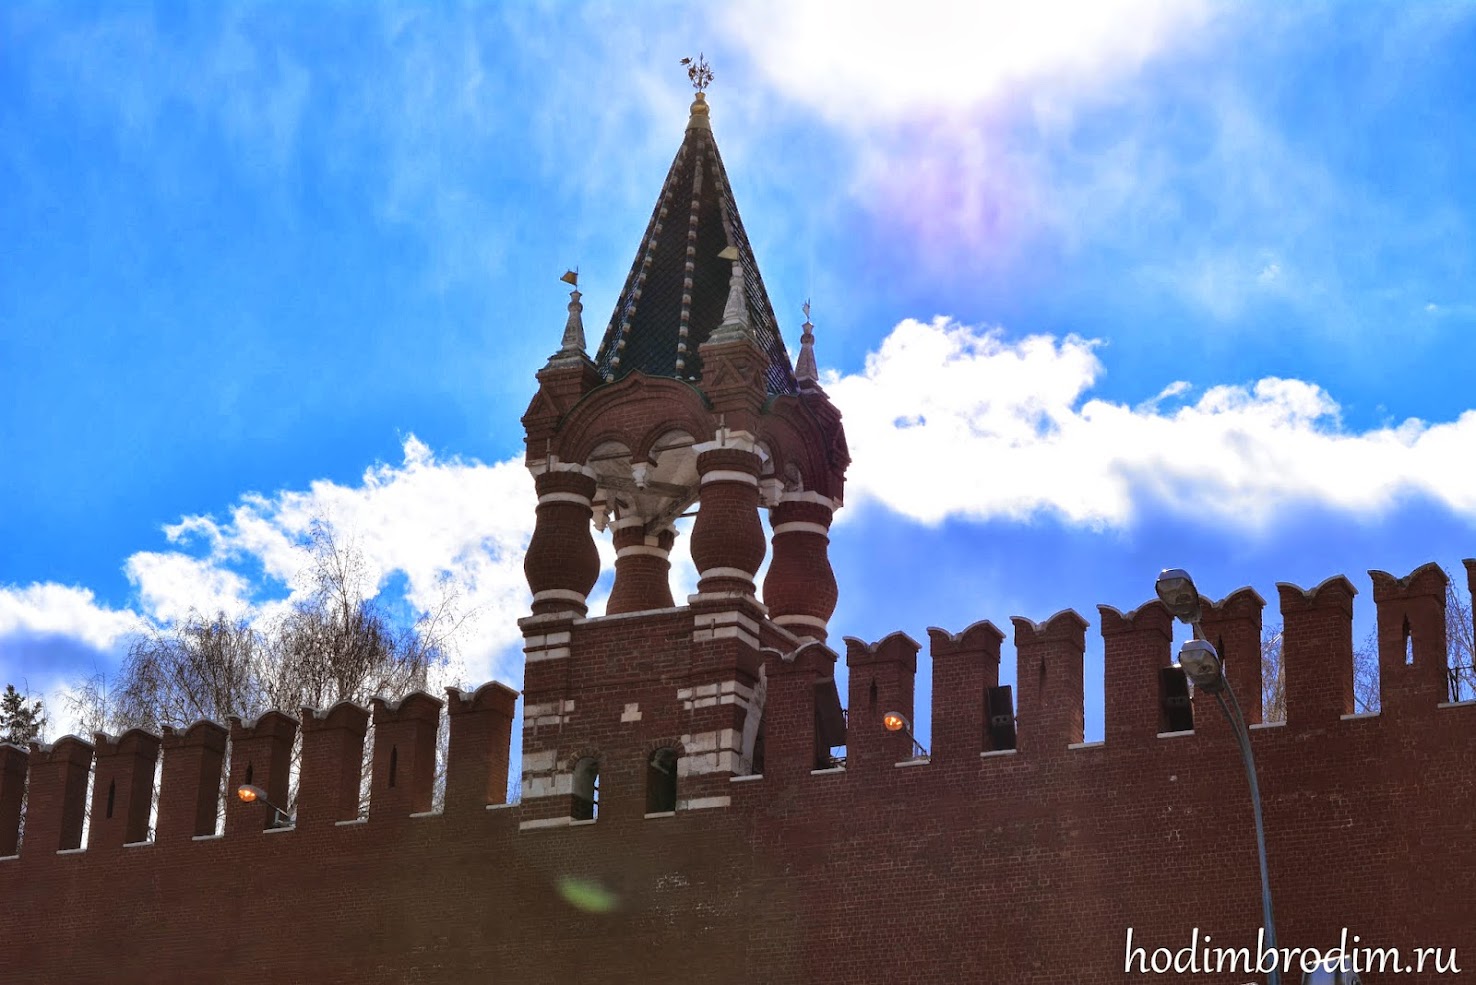 Царская башня московского кремля